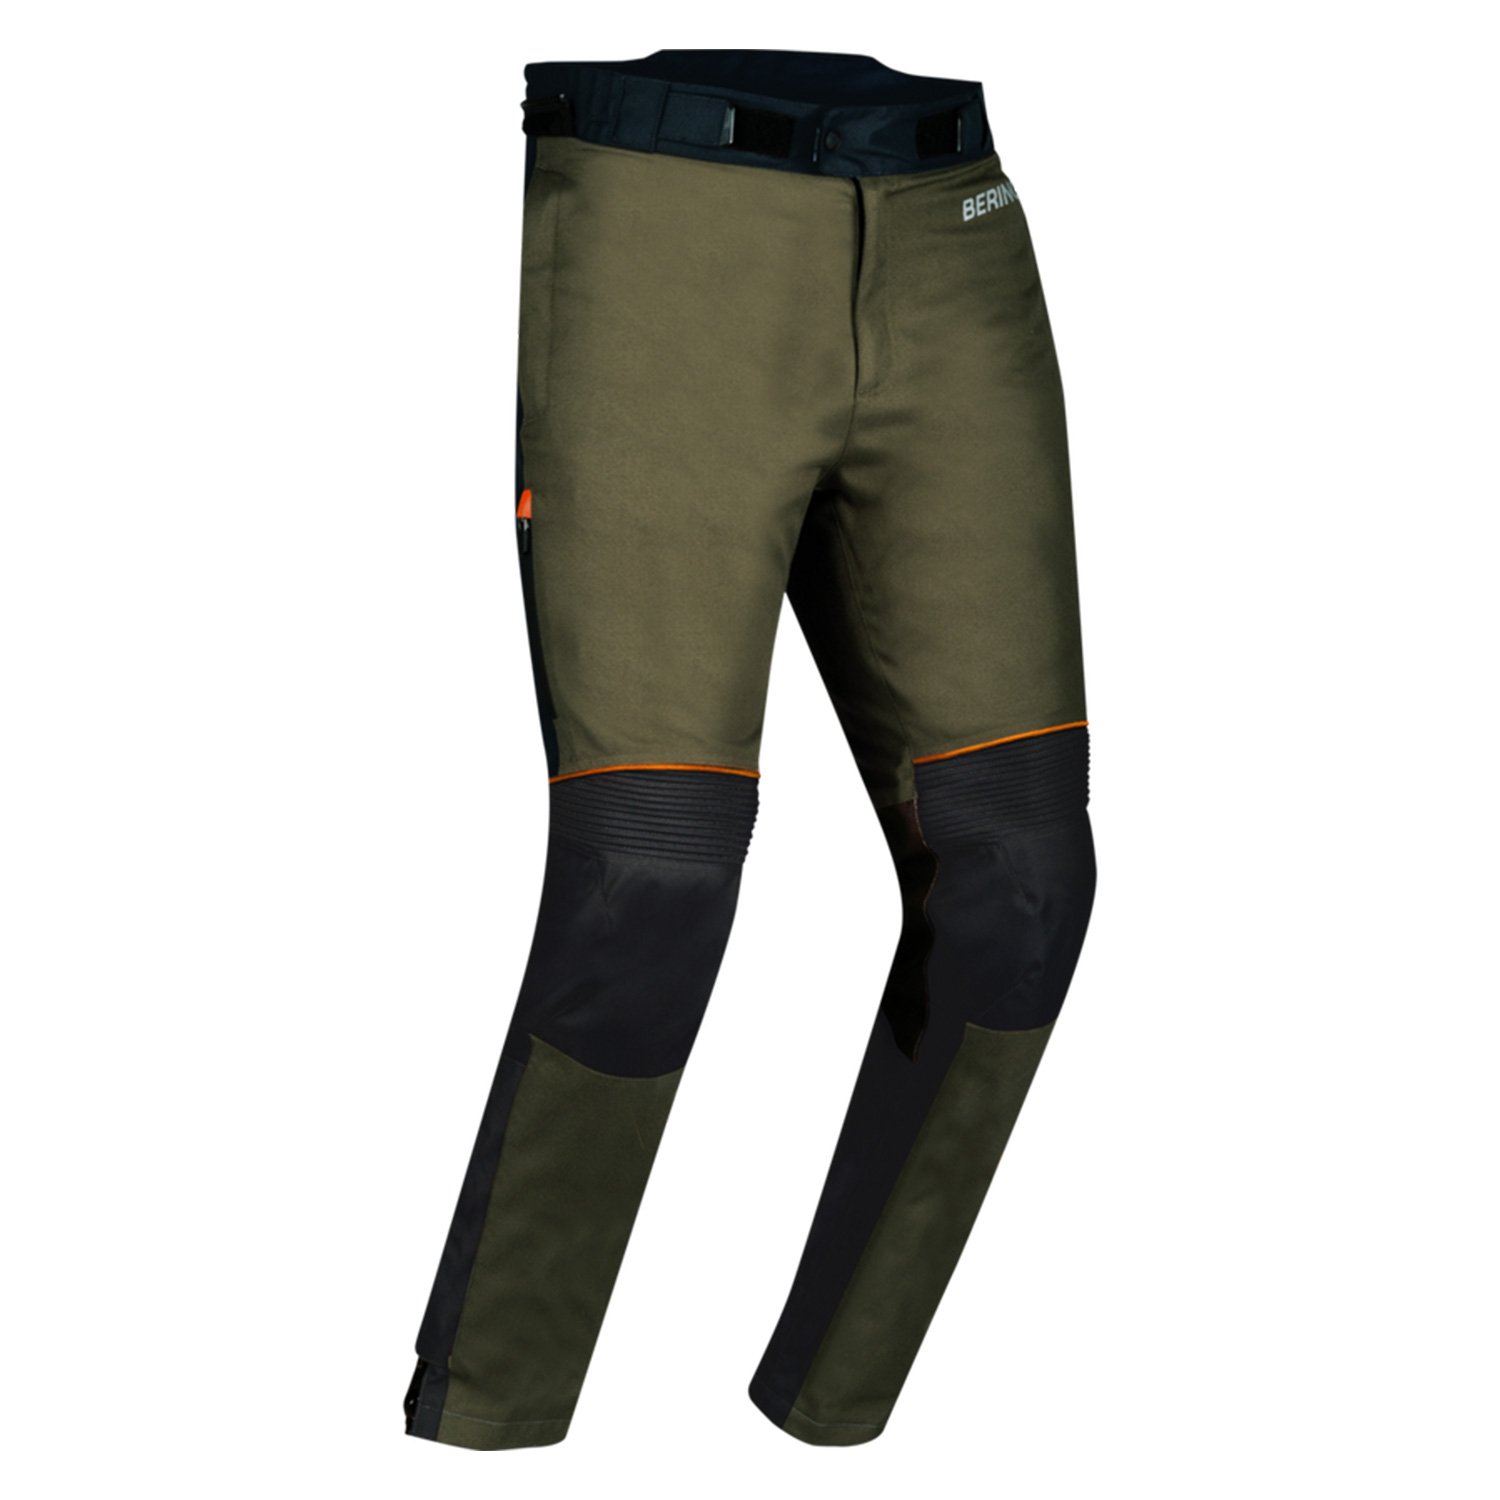 Image of Bering Zephyr Trousers Black Khaki Orange Size XL ID 3660815180822